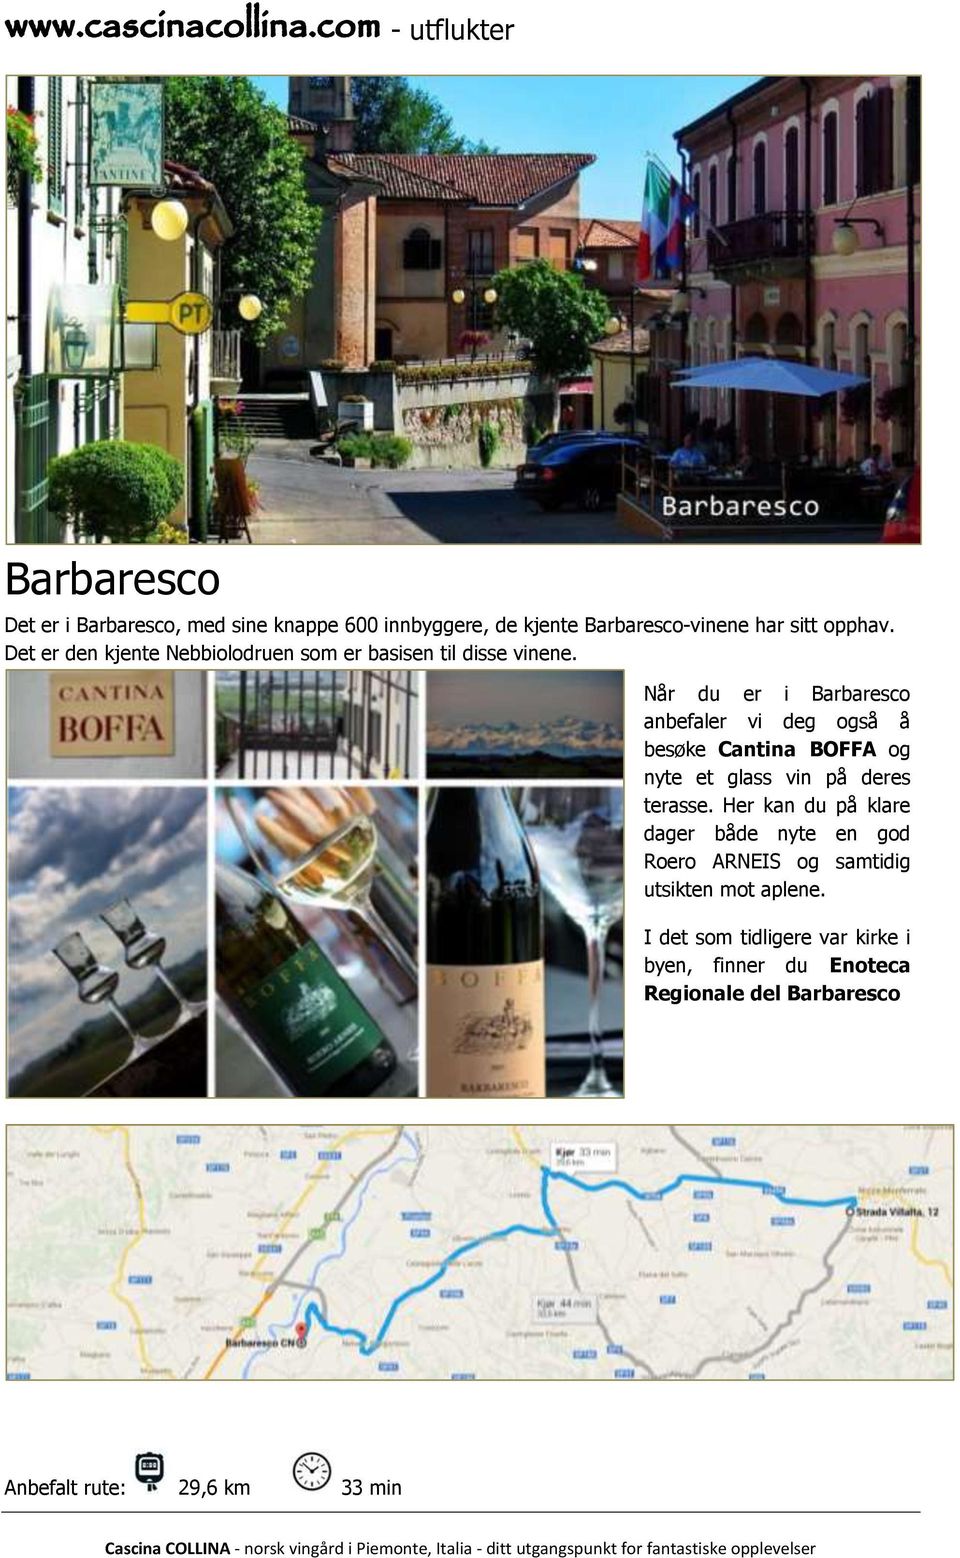 Når du er i Barbaresco anbefaler vi deg også å besøke Cantina BOFFA og nyte et glass vin på deres terasse.